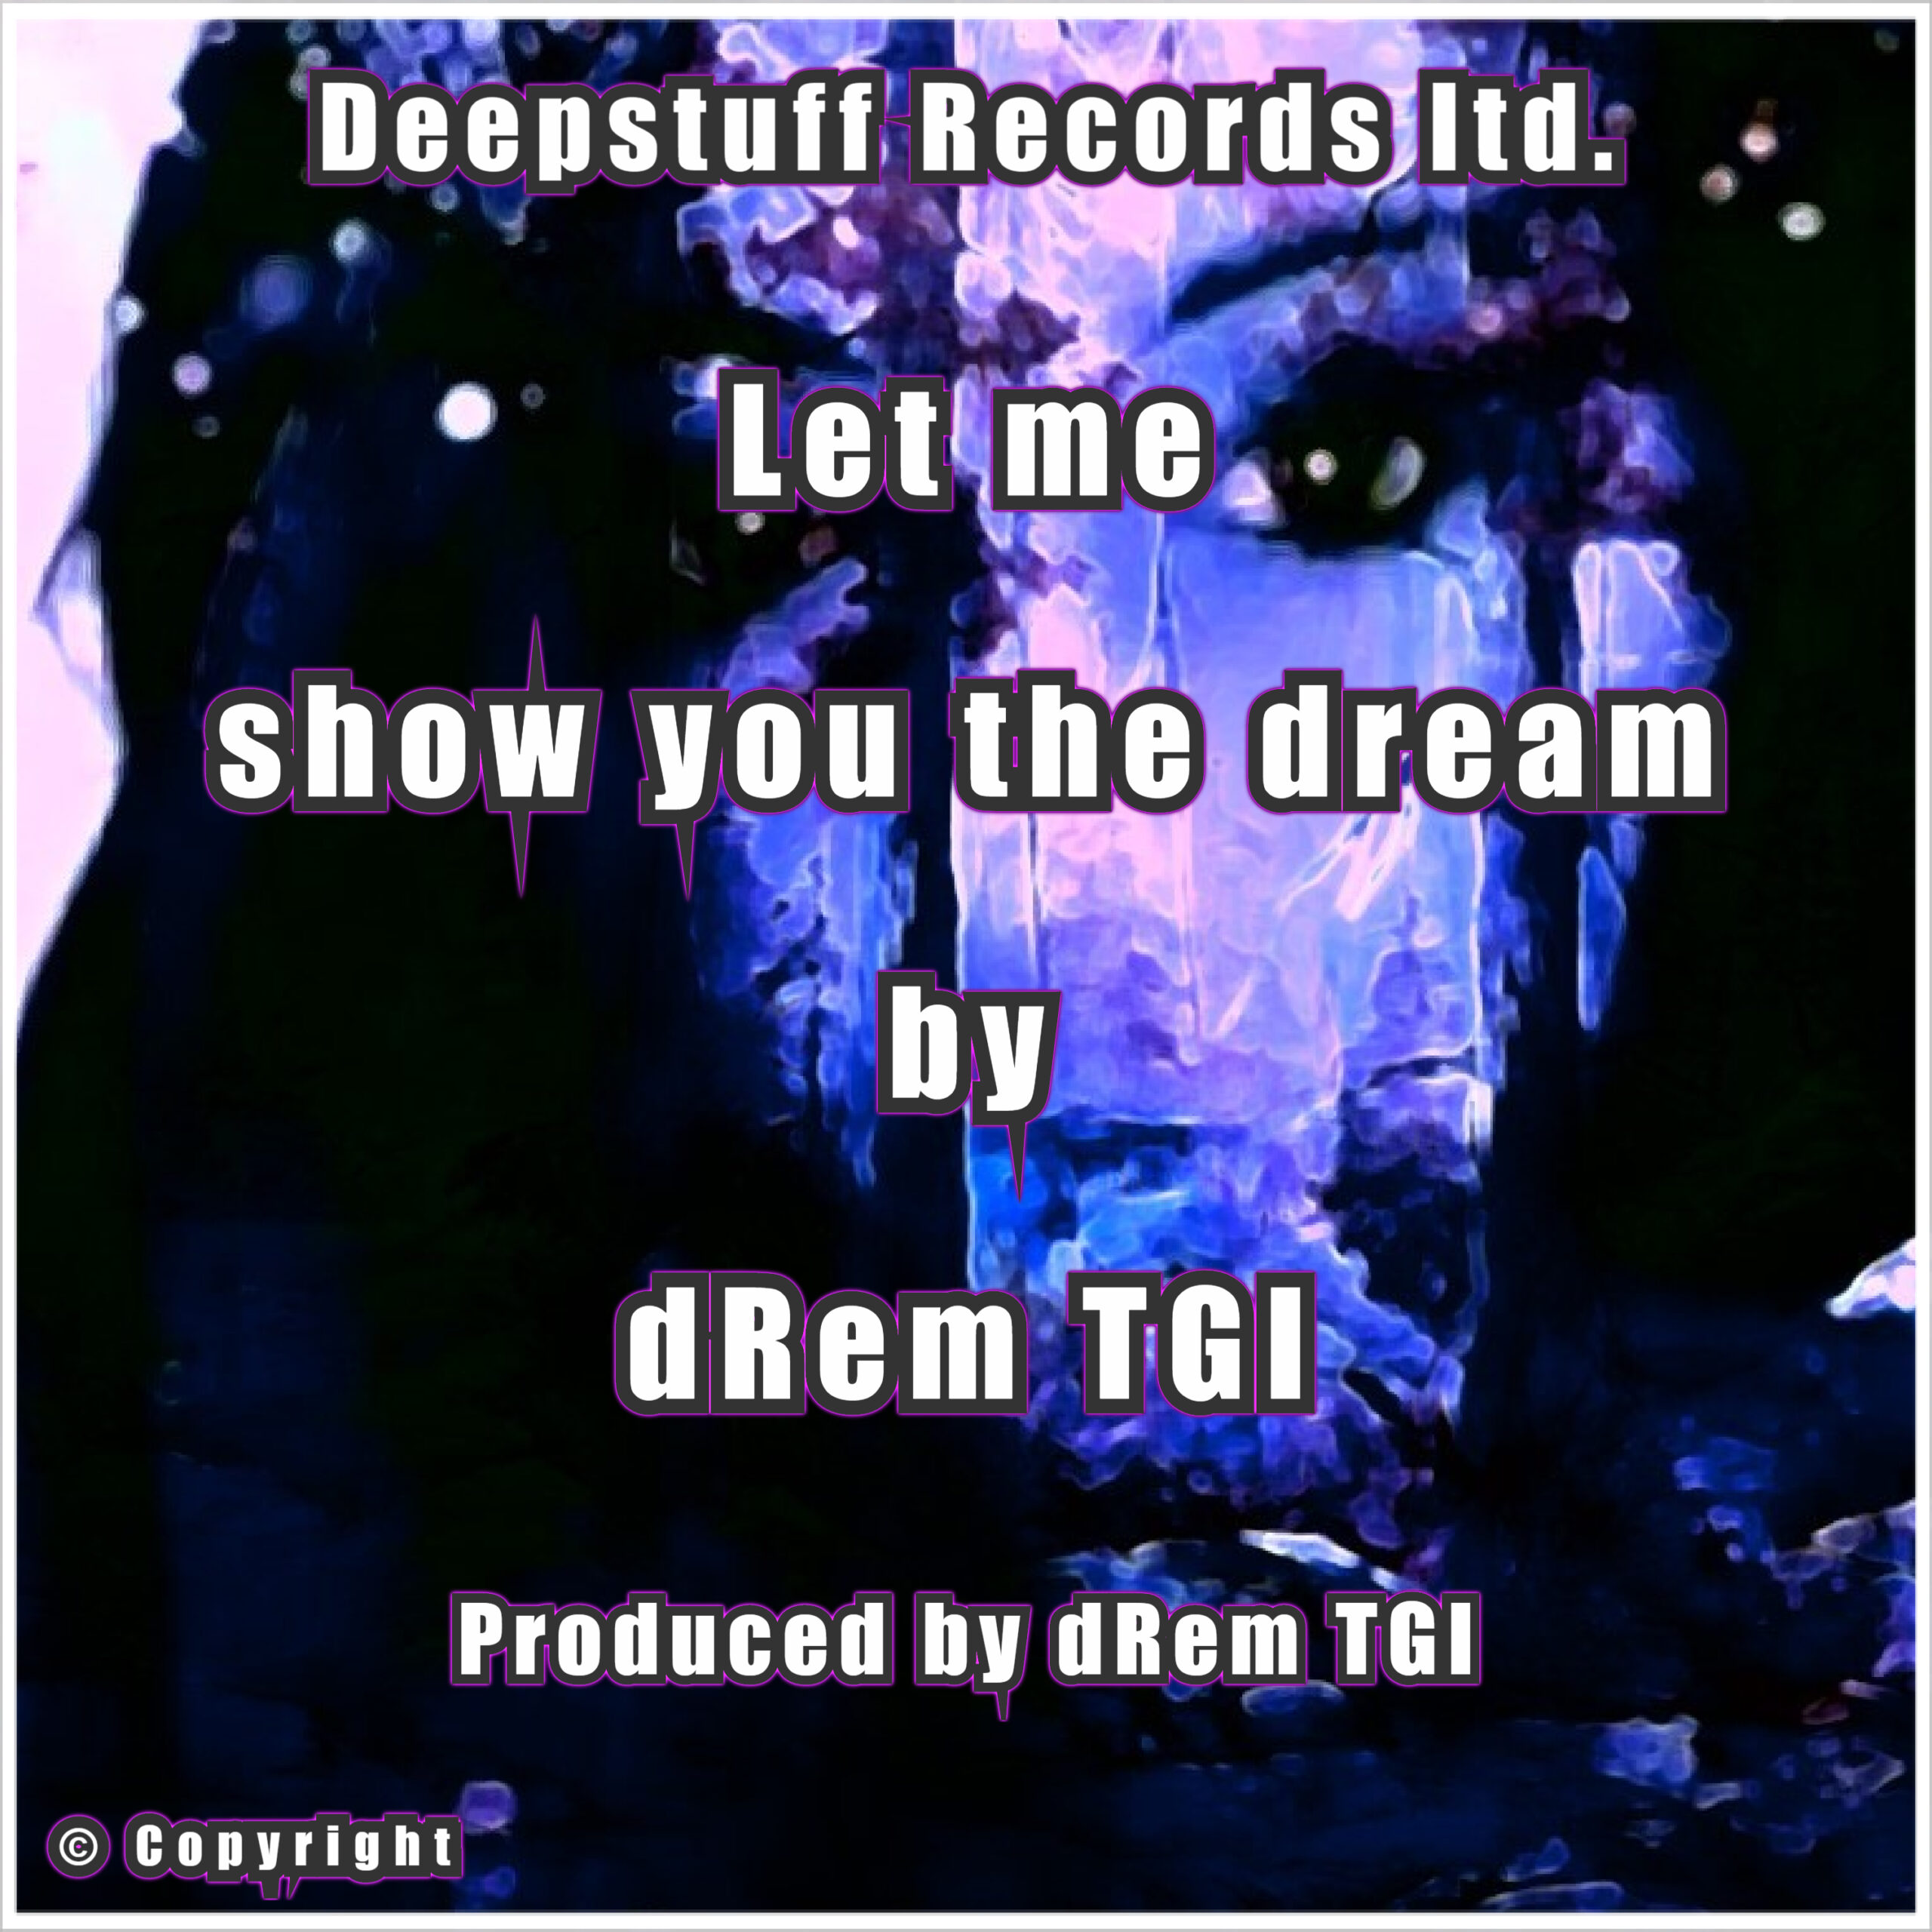 Let me show you the dream (single) by dRem TGI